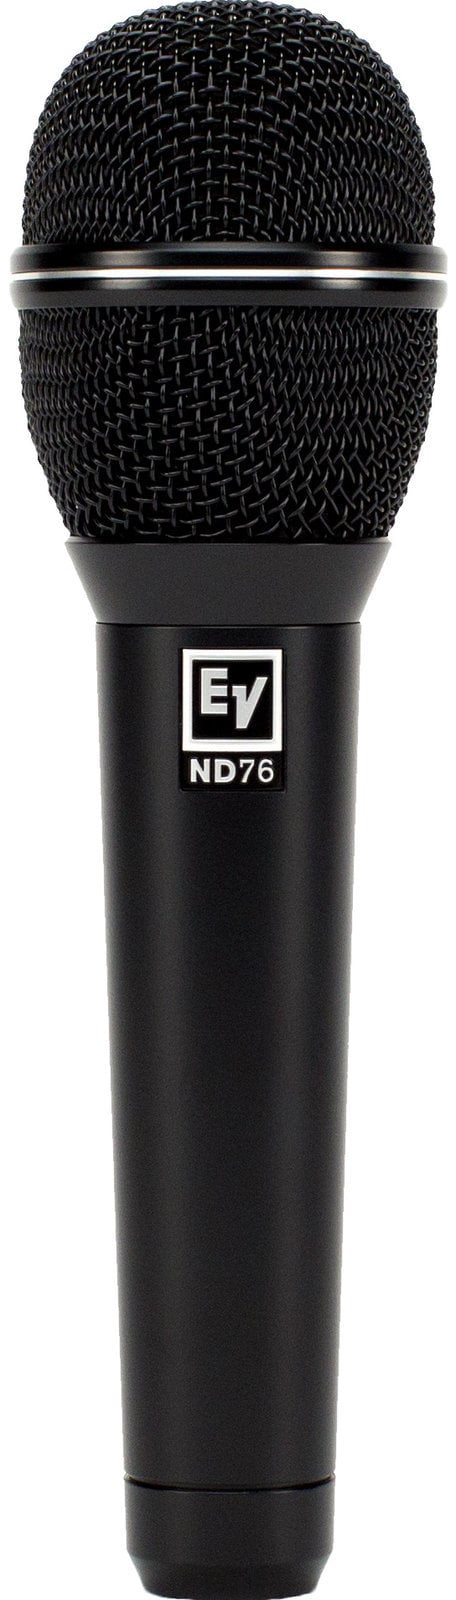 Vokální dynamický mikrofon Electro Voice ND76 Vokální dynamický mikrofon